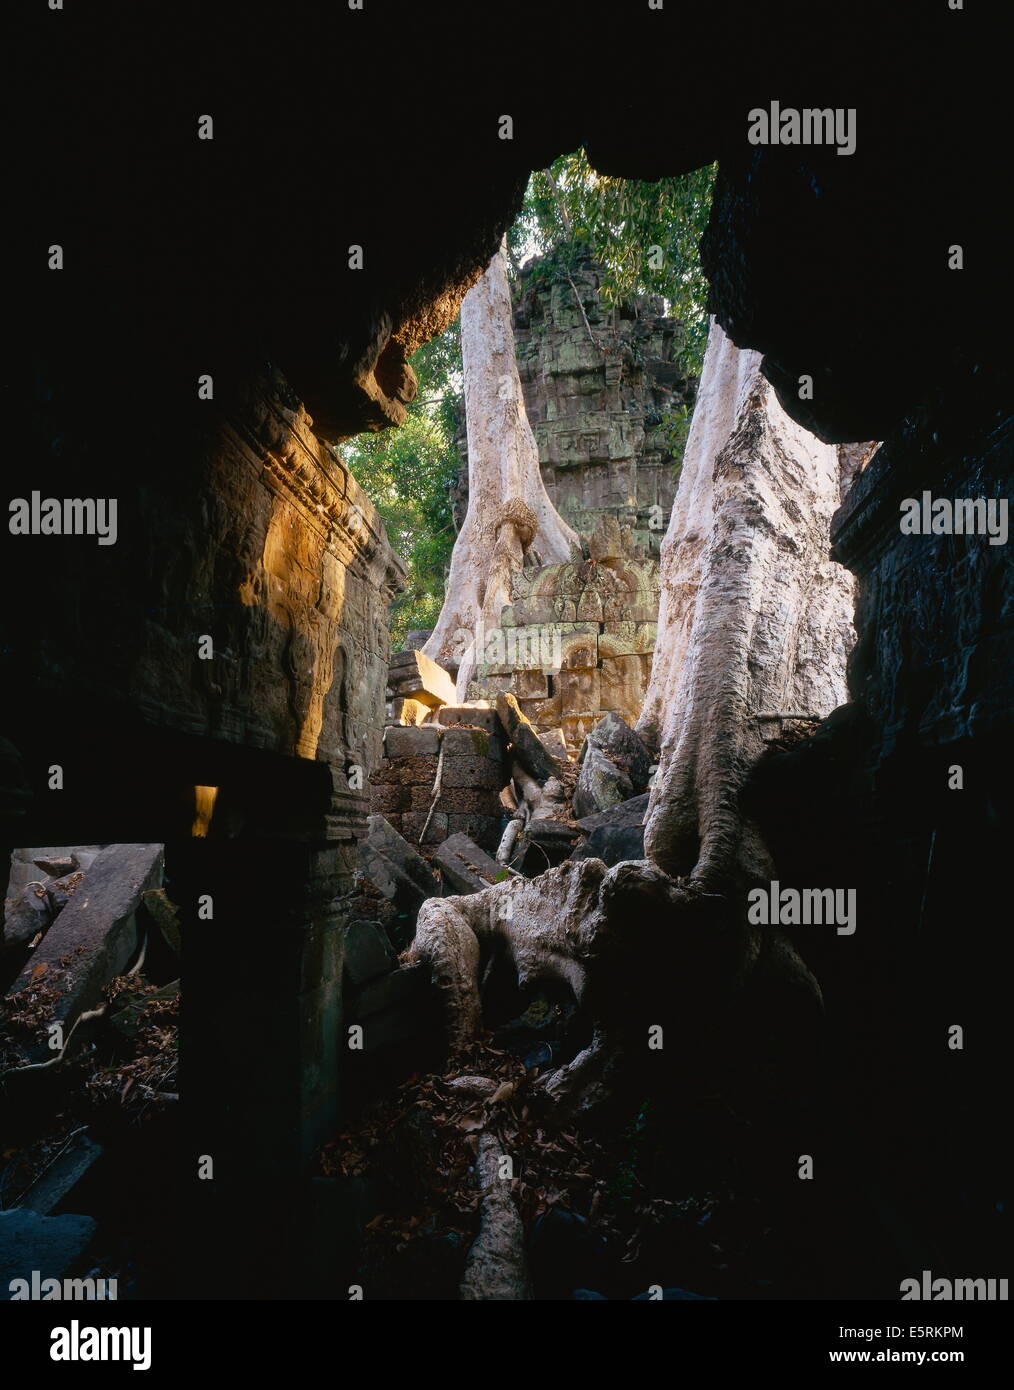 Die Wurzeln von einem riesigen Seide – Baumwolle Baum (Ceiba Pentandra) umarmen die 12. Jahrhundert Ruinen in Ta Prohm, Angkor, Kambodscha. Stockfoto